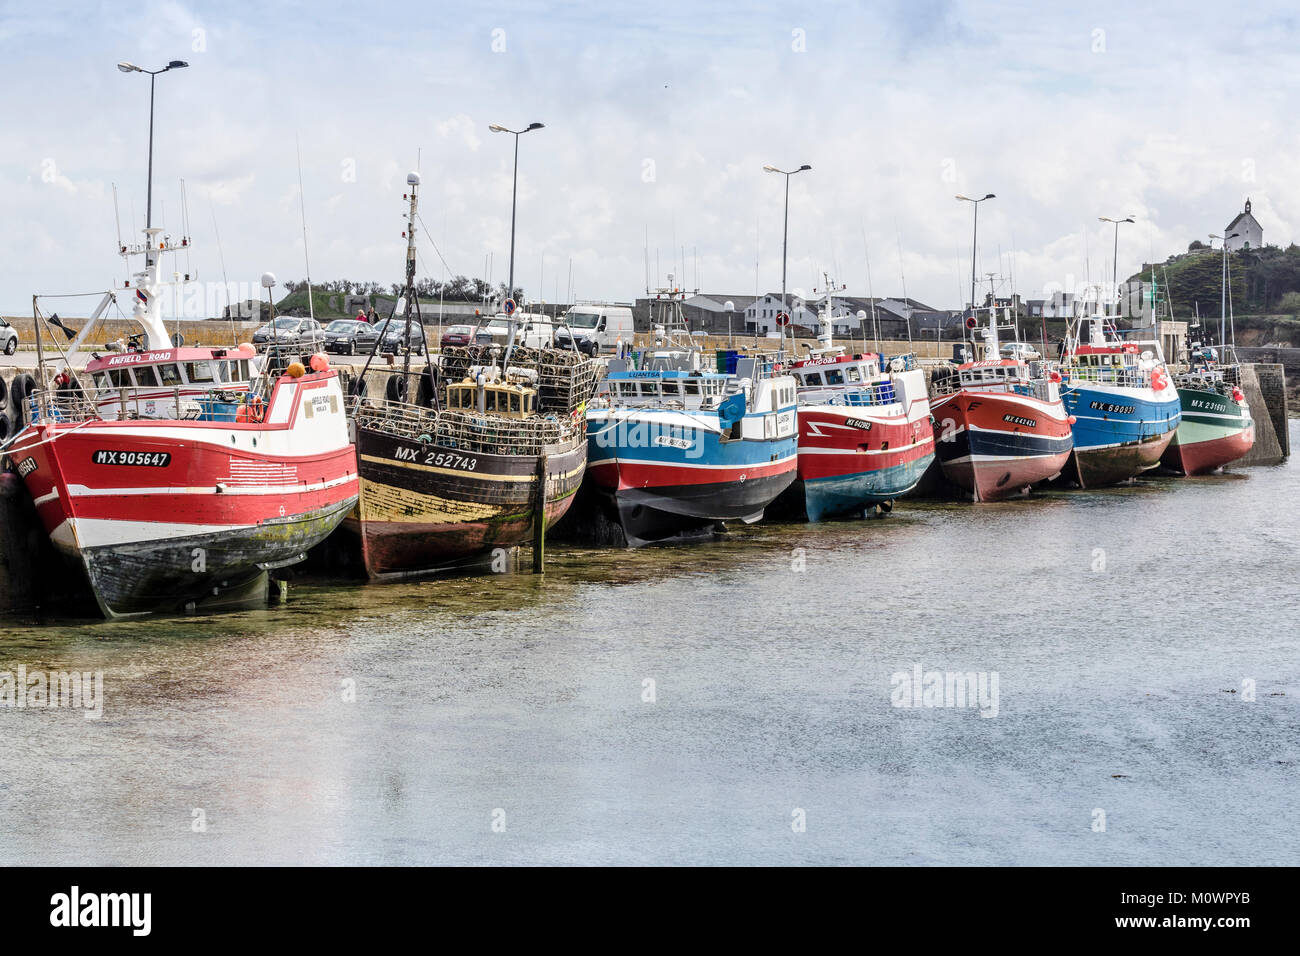 Les bateaux de pêche français séché à quai dans le port de Roscoff, Bretagne, France Banque D'Images